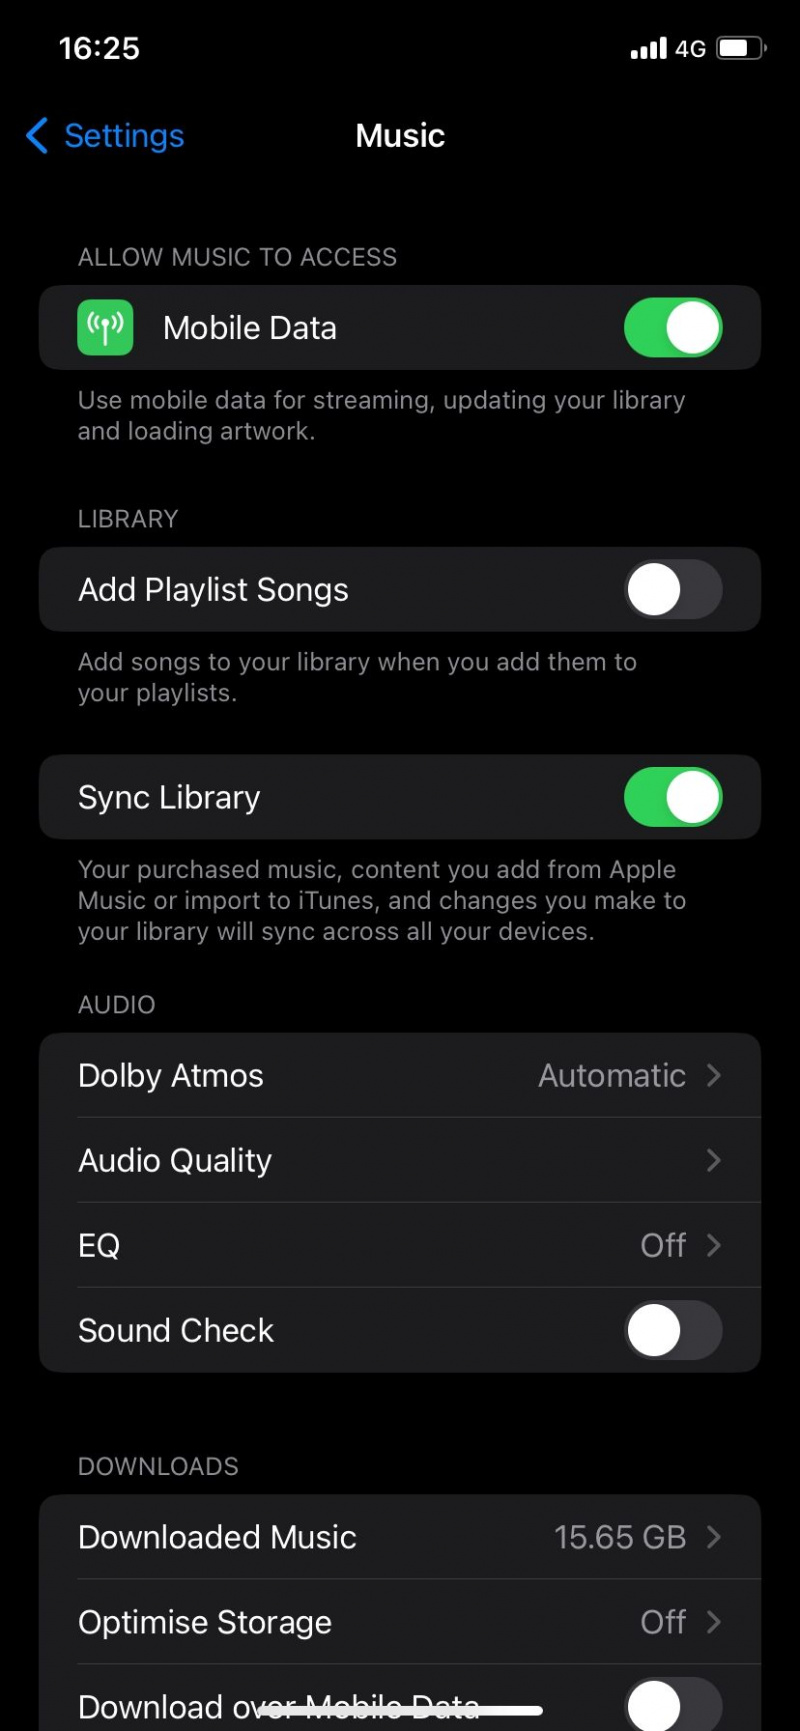 Apple Musicin käyttämän tiedon määrän minimoiminen